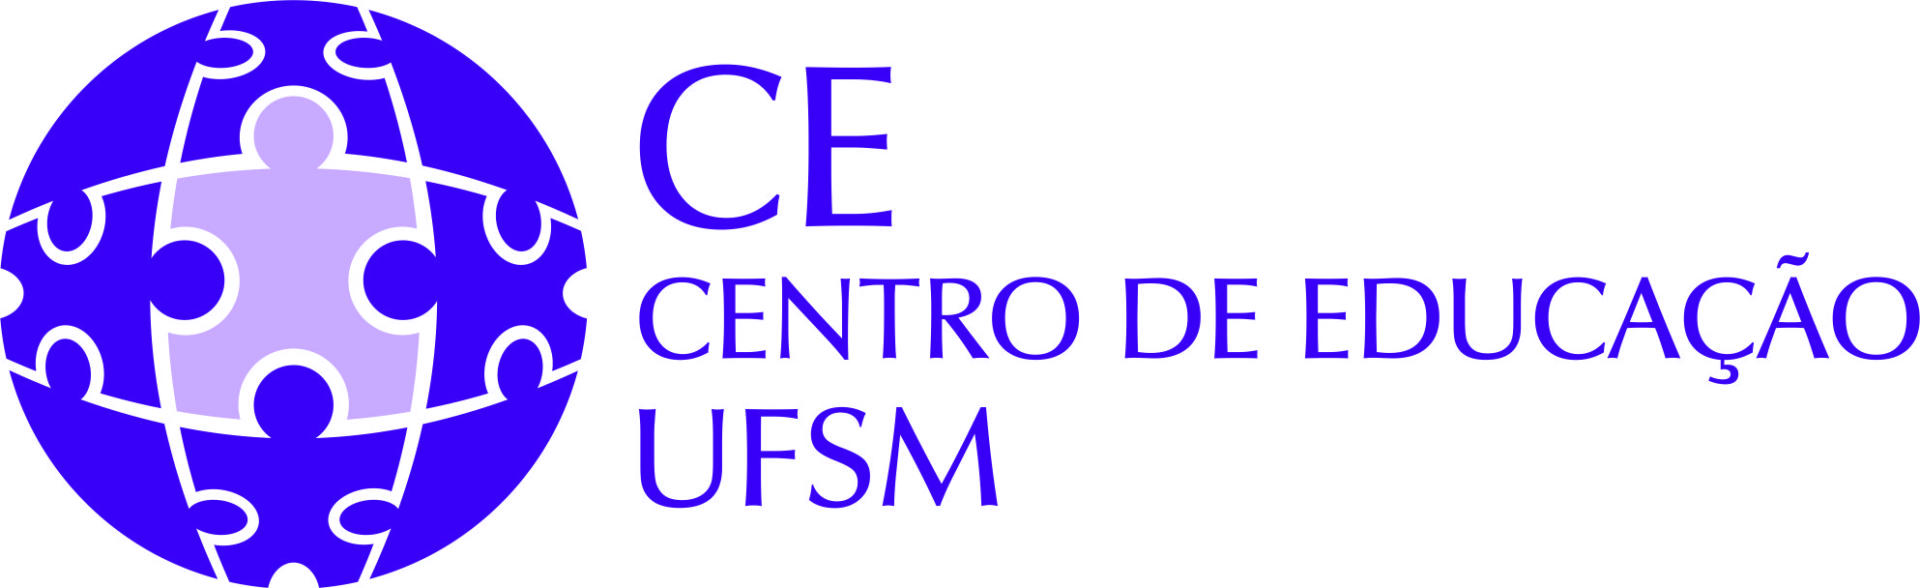 logotipo Centro de educação